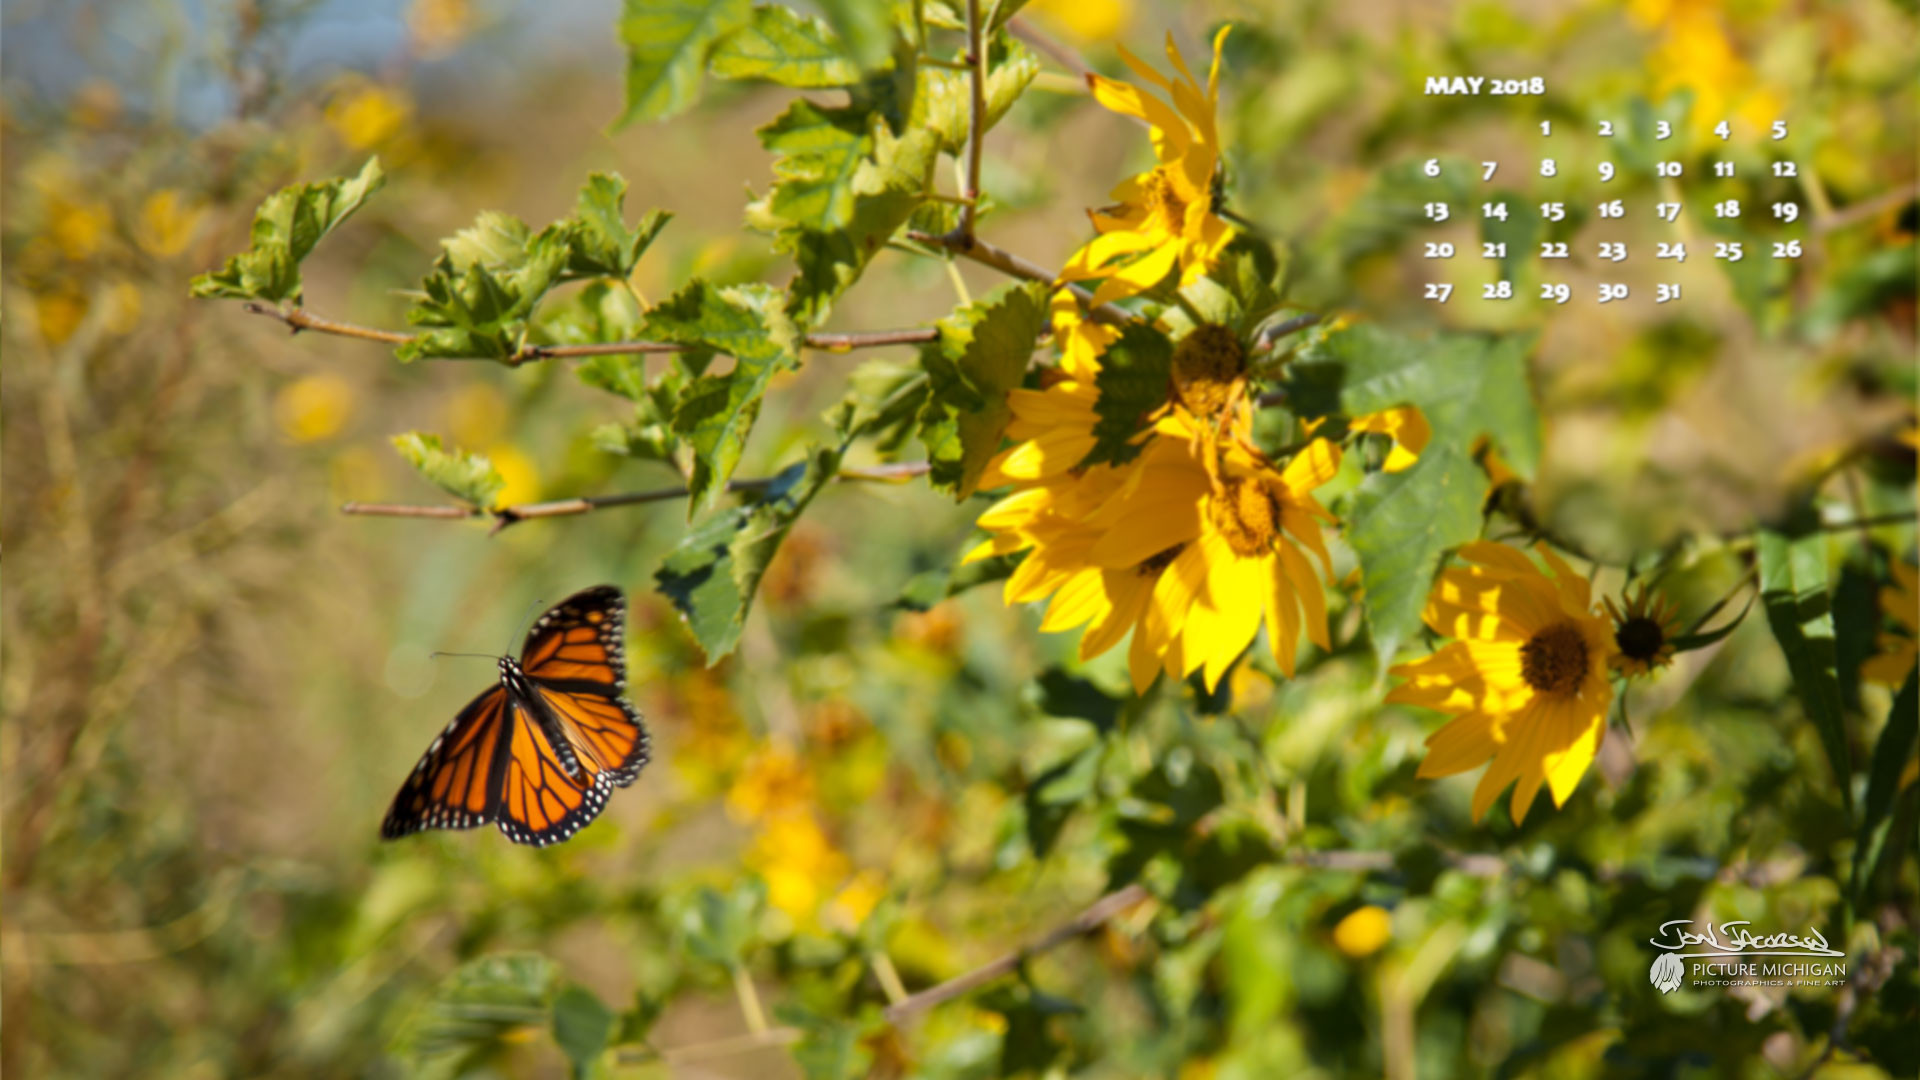 1920x1080 May 2018 Desktop Calendar Wallpaper - Michigan Butterfly